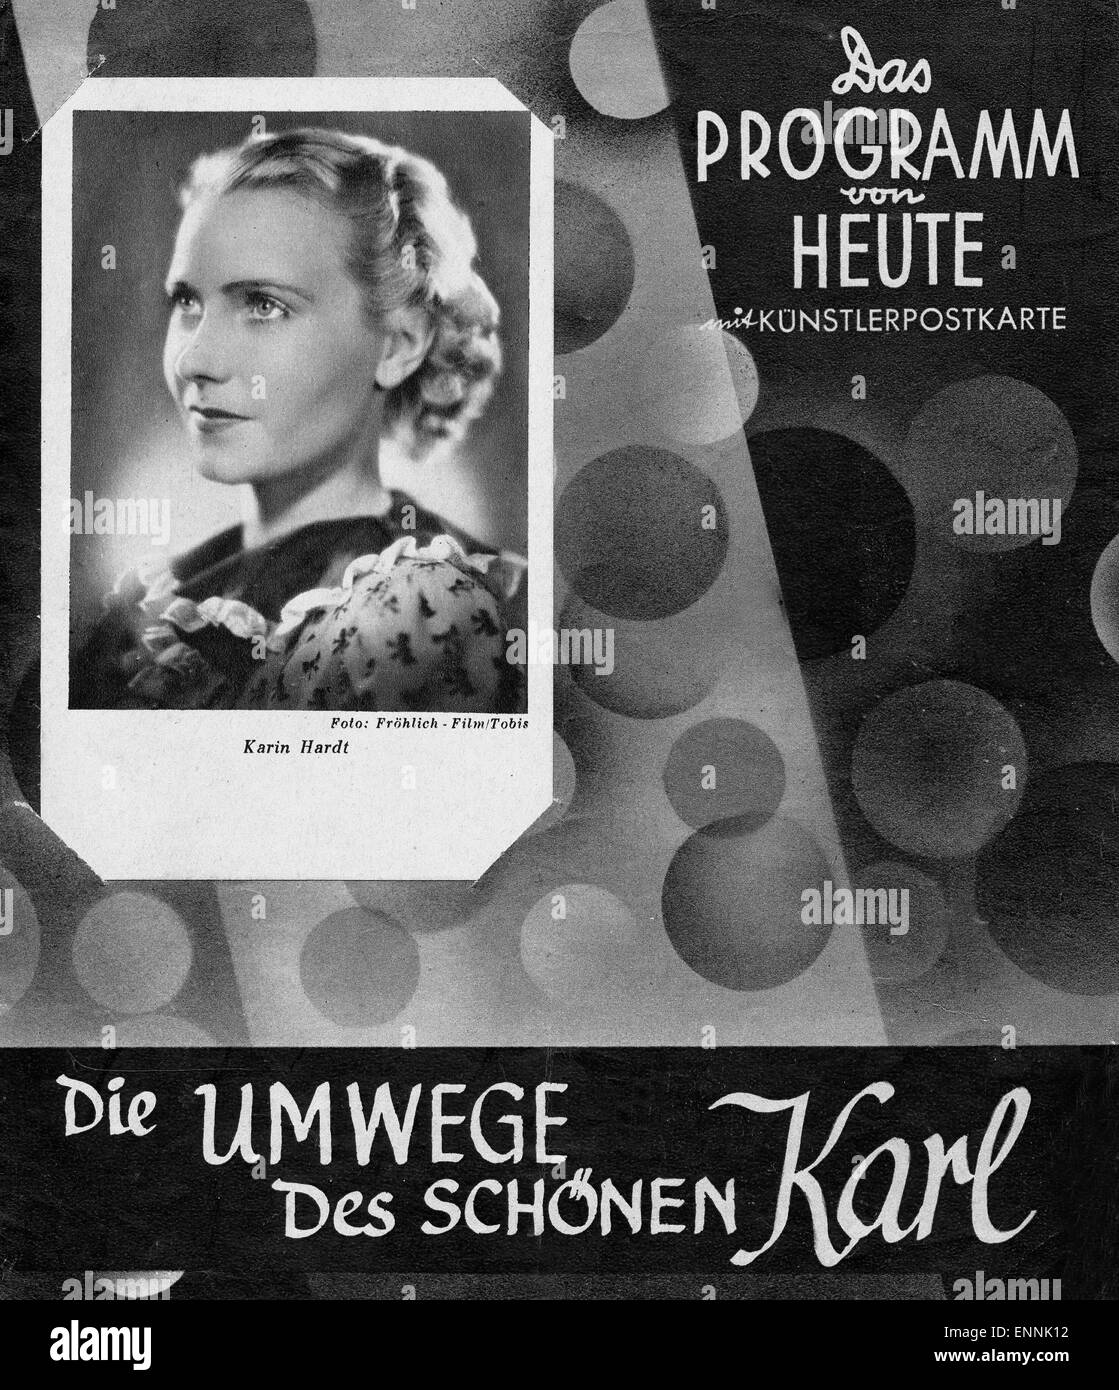 Titelblatt des Programmhefts «Programm von heute" Künstlerpostkarte 1211 Nr. mit vom Film 'Die Umwege des schönen Karl' mit Banque D'Images